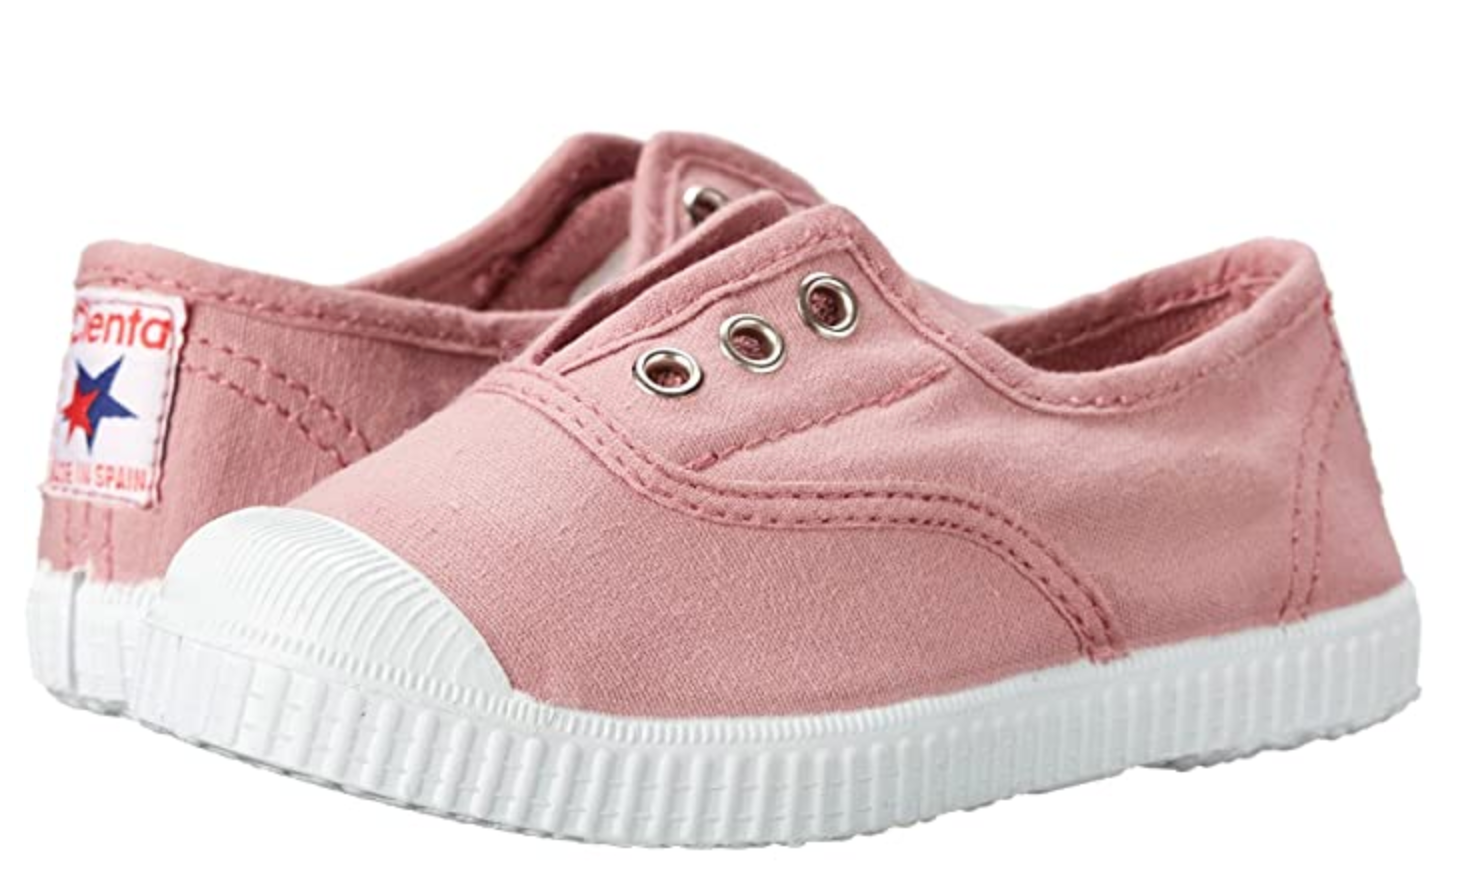 Cienta shoe rose pink sneaker